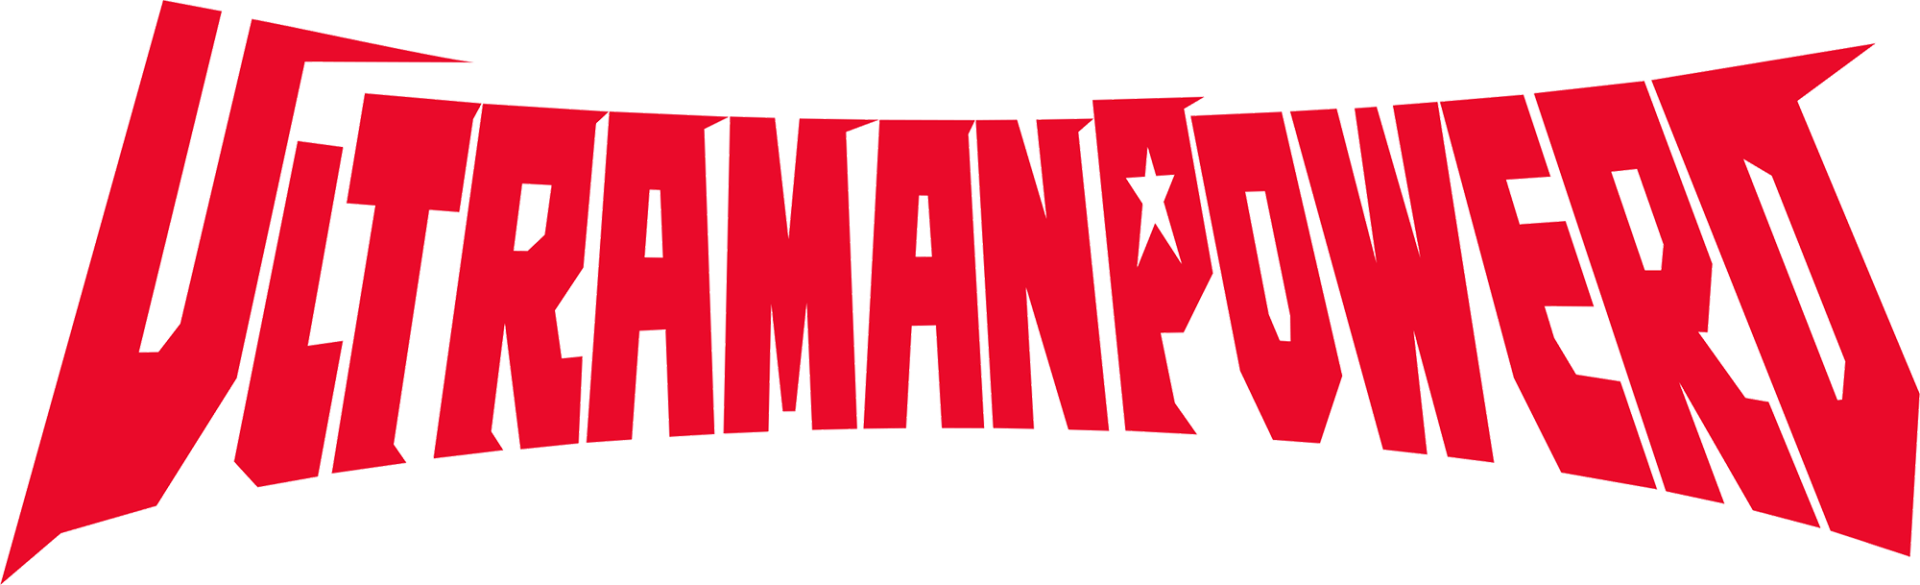 Ultraman Powered